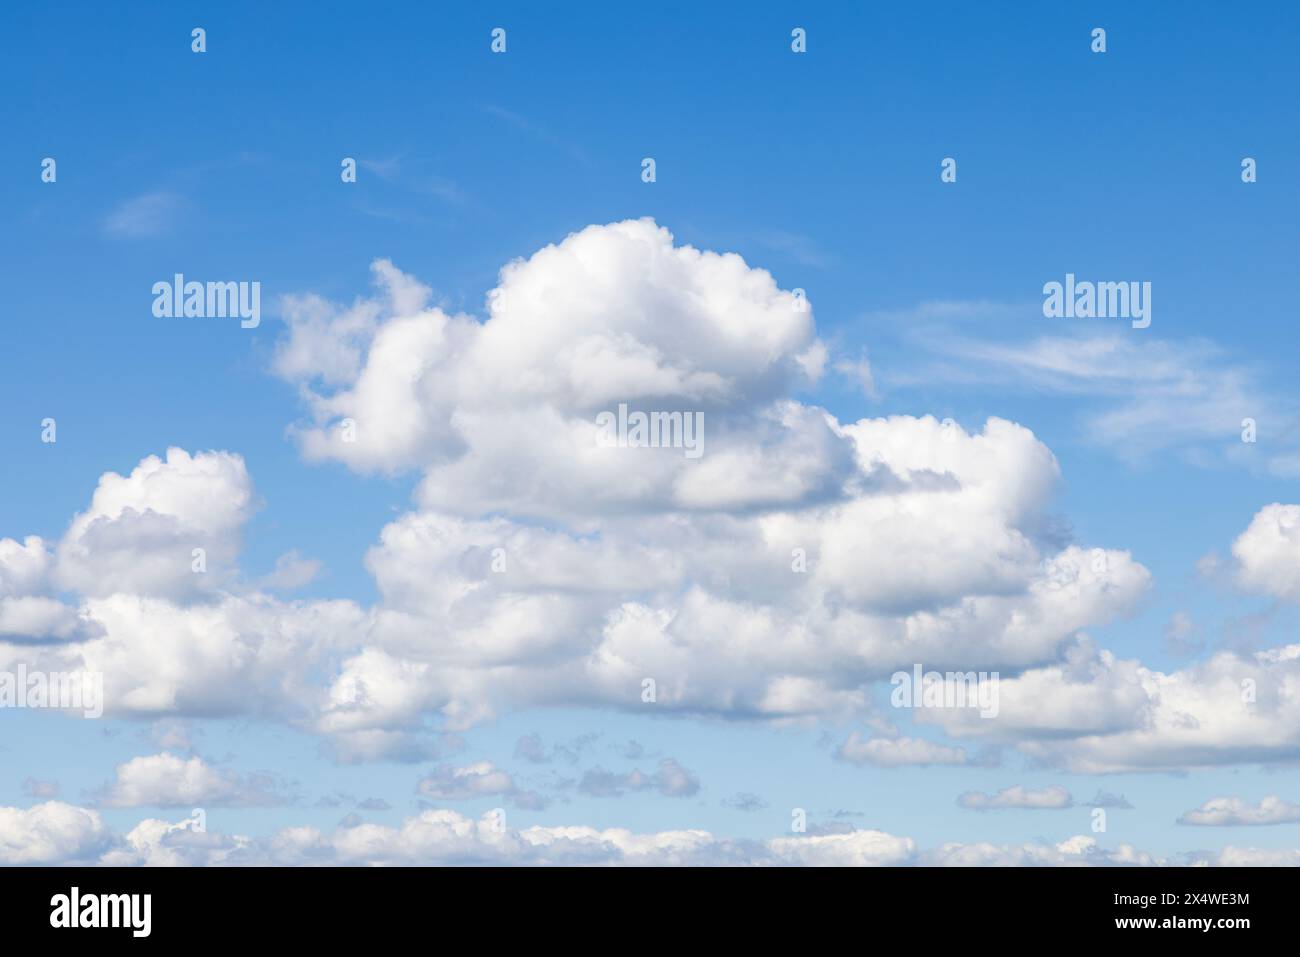 Nuages Cumulus, indiquant un beau temps. Gloucestershire, Angleterre, Royaume-Uni Banque D'Images